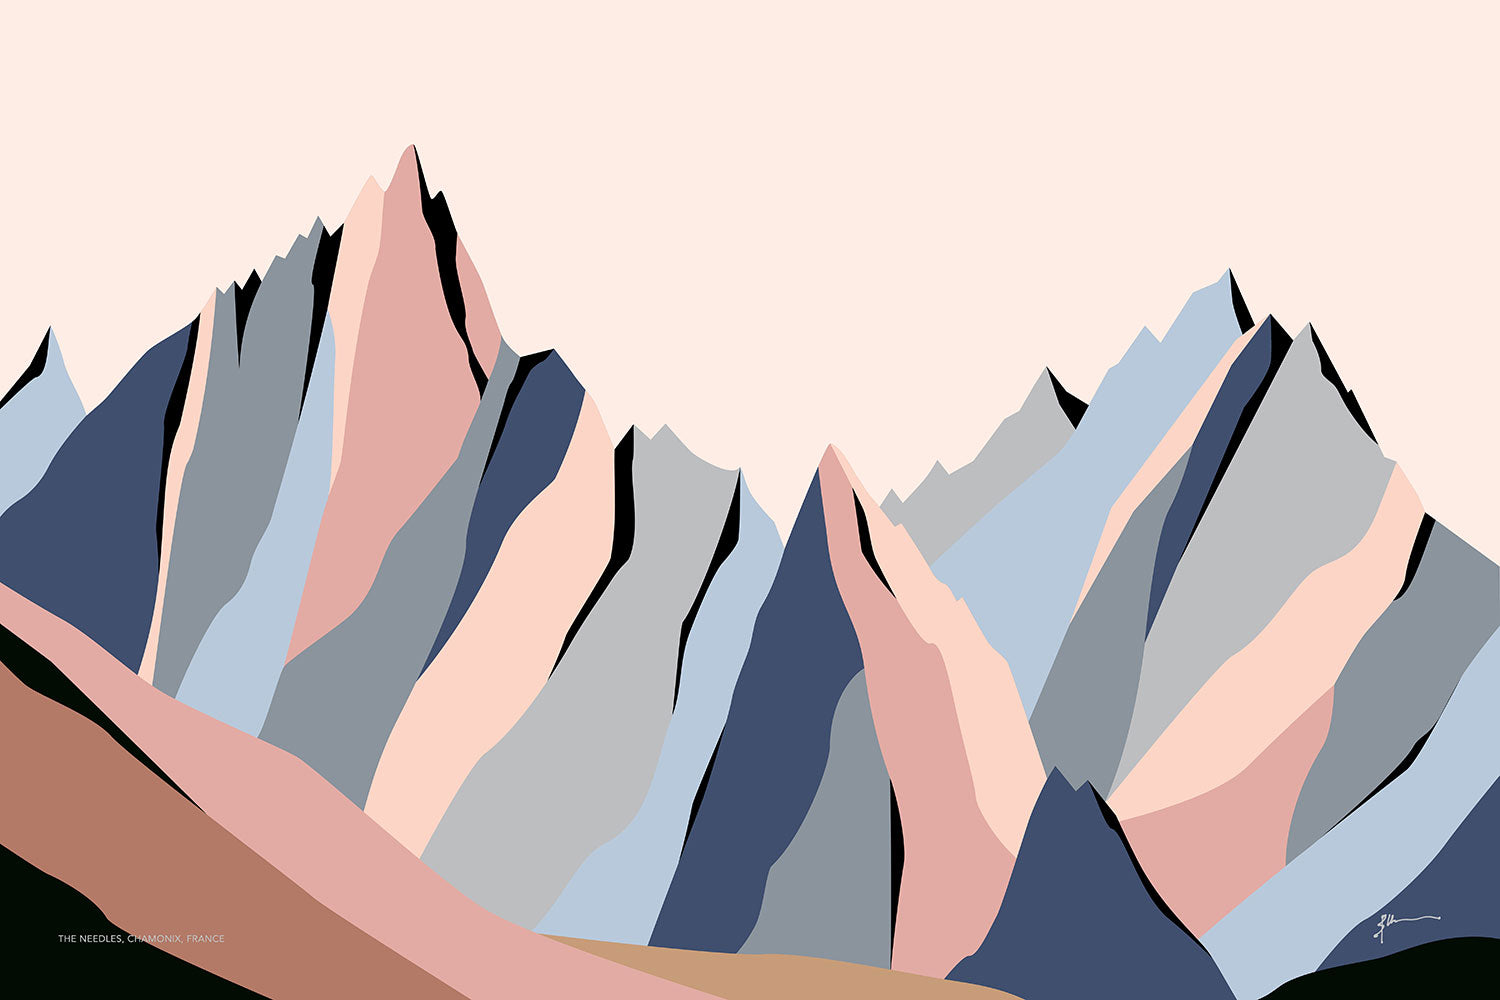 The Needles, Chamonix, France. Modern Mountain Landscape Art Print. Aiguilles de Chamonix. Impression d'art de paysage de montagne moderne